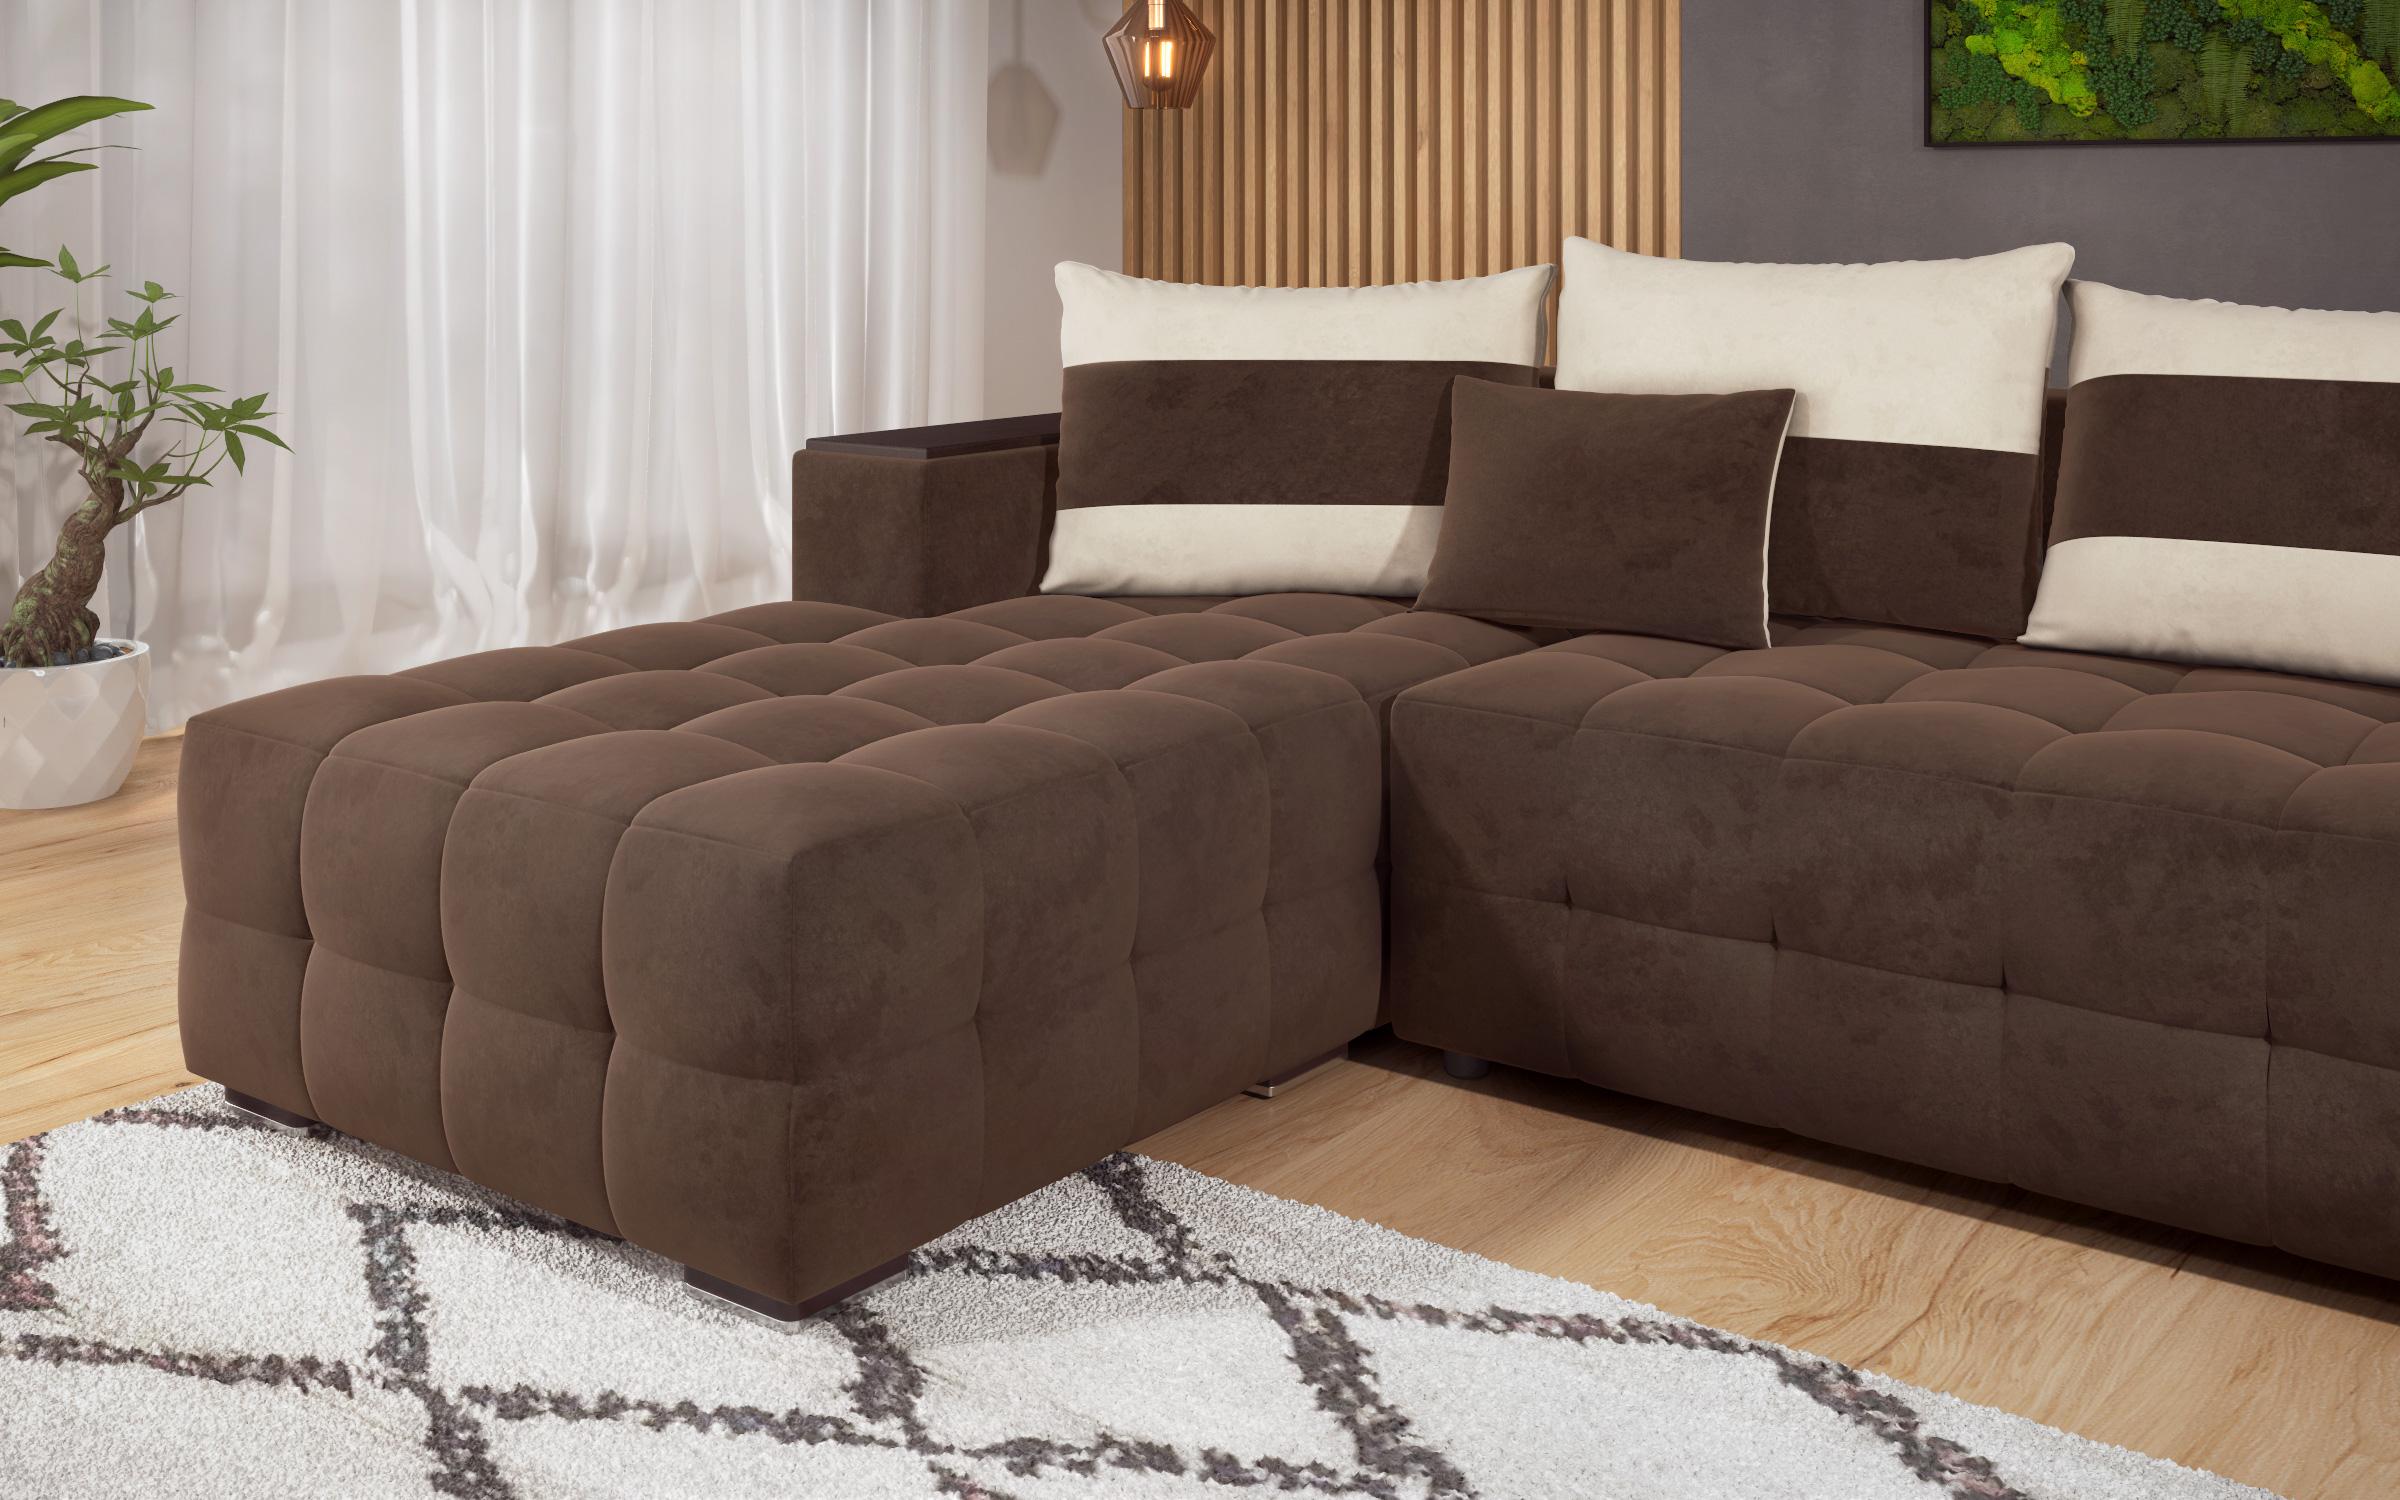 Γωνιακός καναπές - κρεβάτι με ανάκλιντρο και μπράτσο μίνι ραφιέρα Melvin, σκούρο καφέ + ανοιχτό μπεζ  6